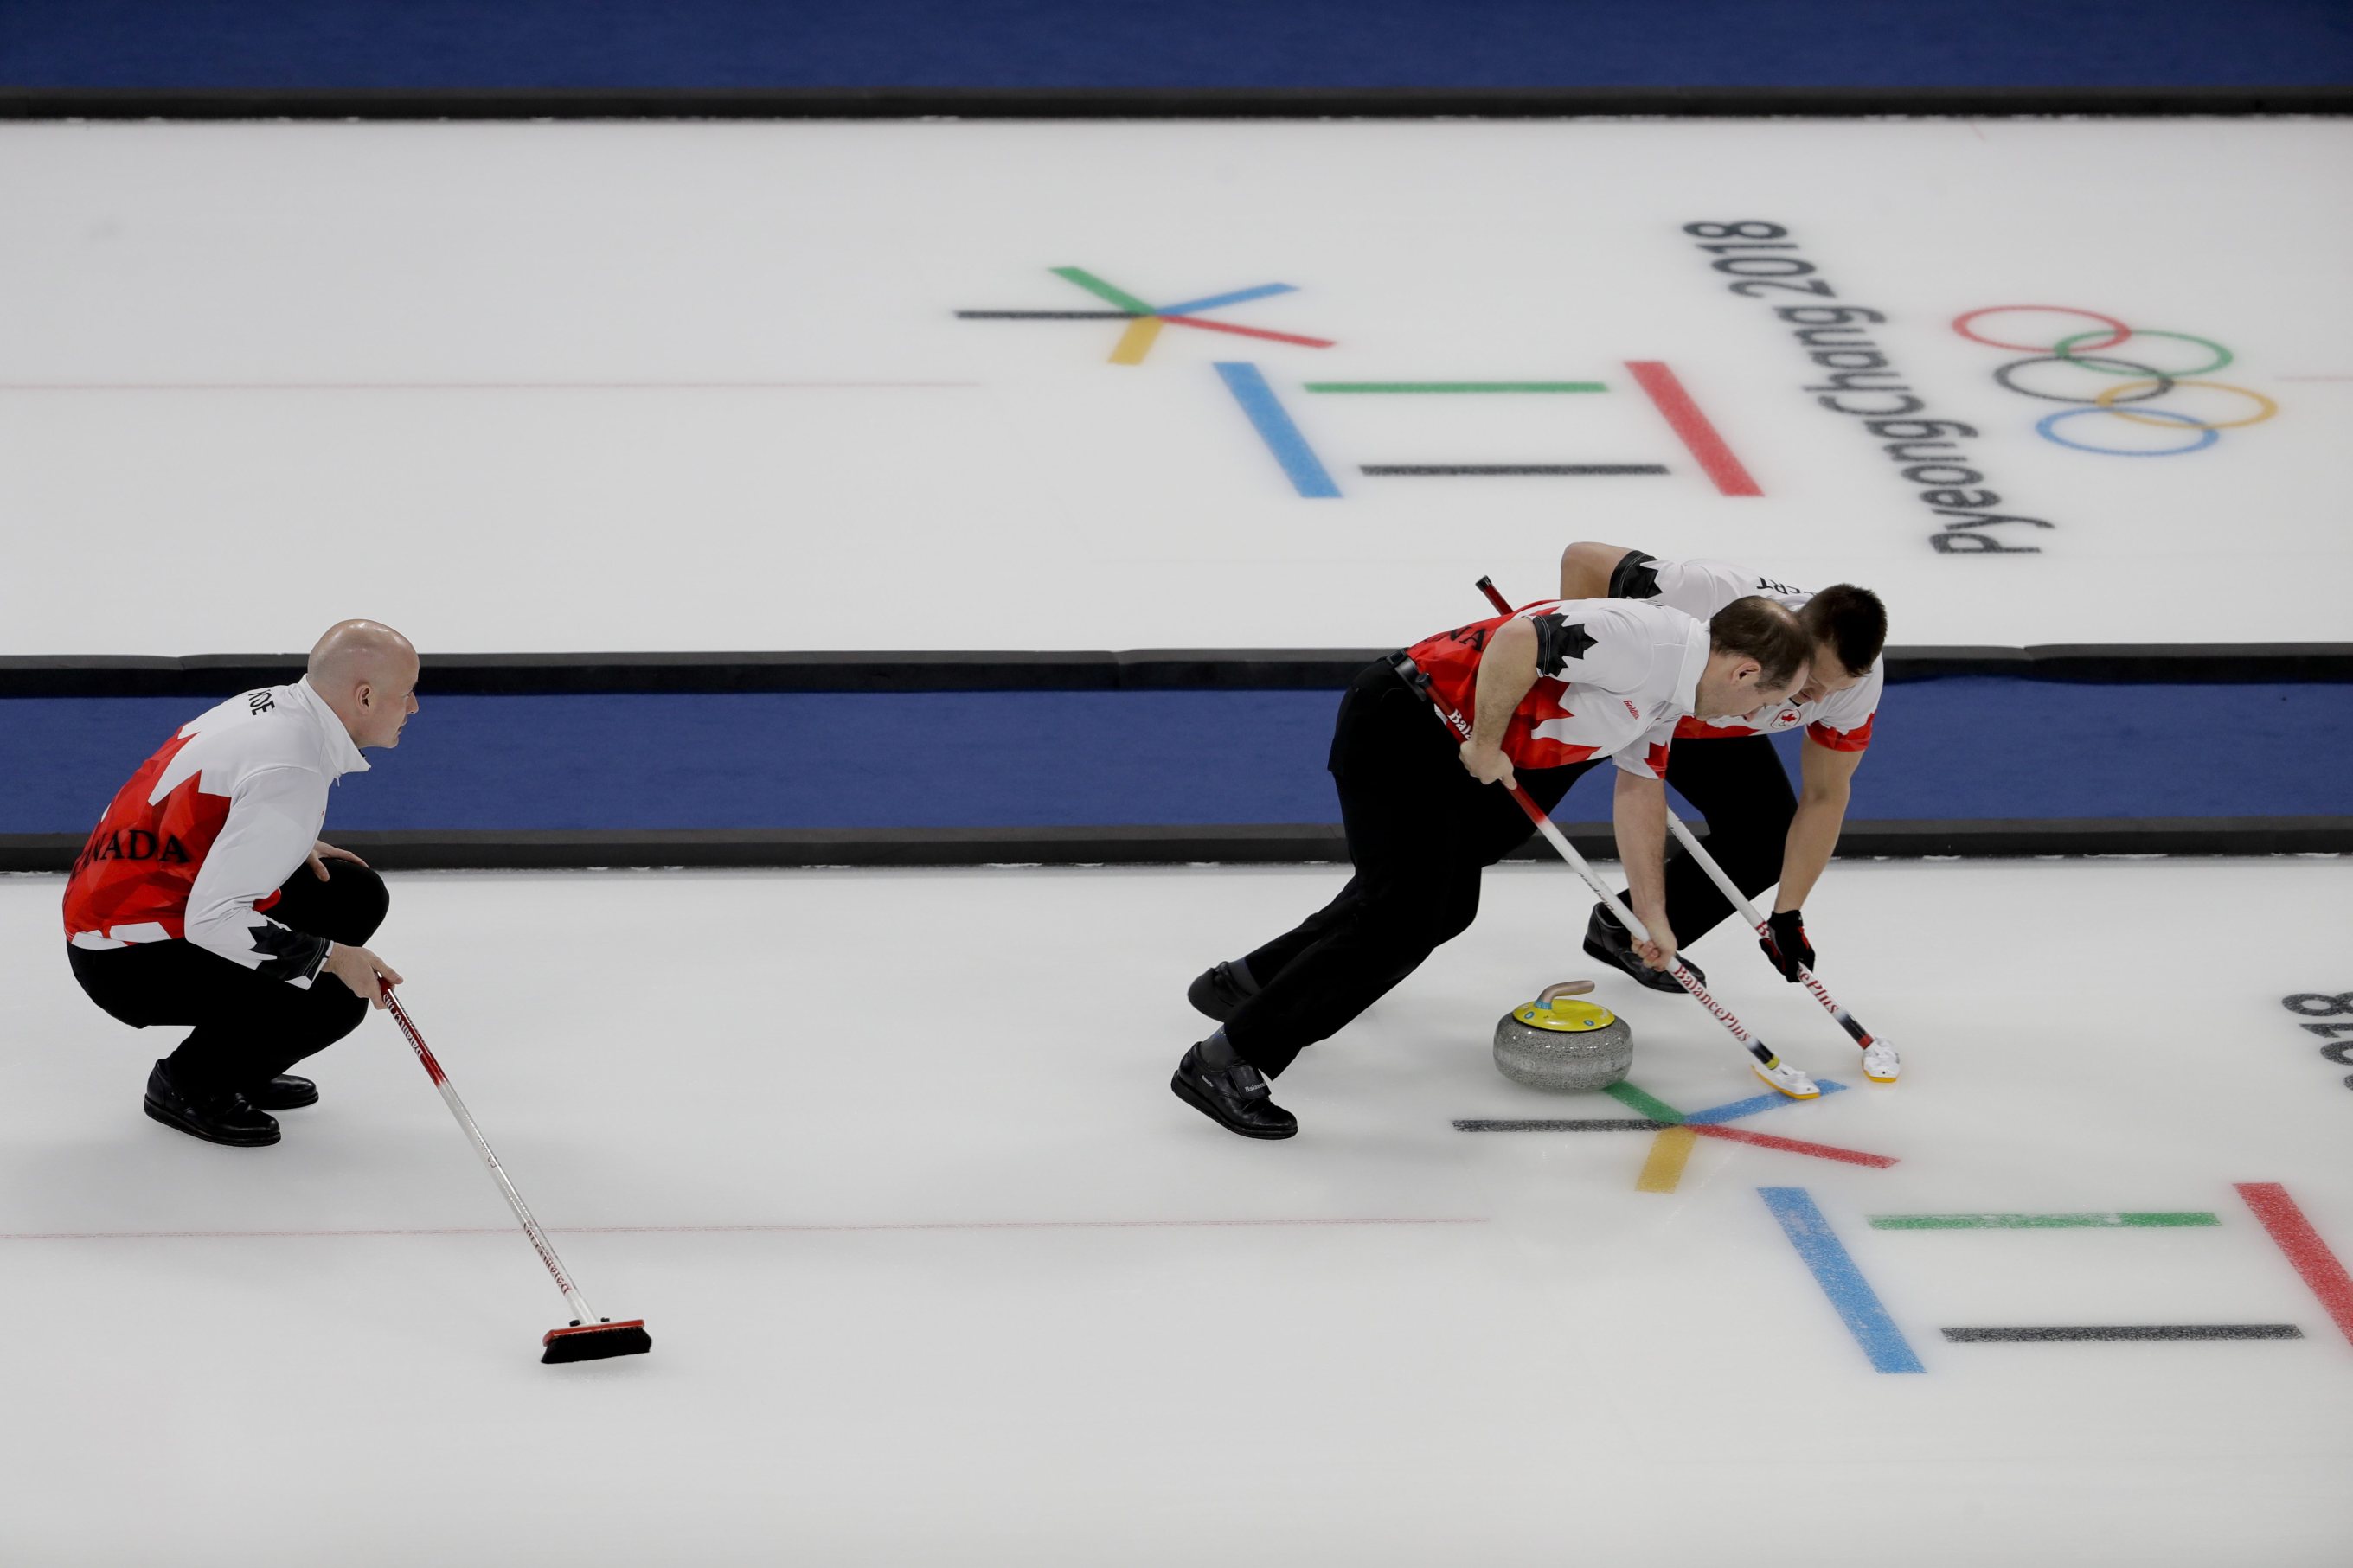 Le capitaine du Canada, Kevin Koe, observe ses coéquipiers Ben Hebert, à droite, et Brent Laing balayant pendant un match de curling contre le Japon lors des Jeux olympiques d'hiver de PyeongChang à Gangneung en Corée du Sud, le mardi 20 février 2018. (Photo : AP/Natacha Pisarenko)